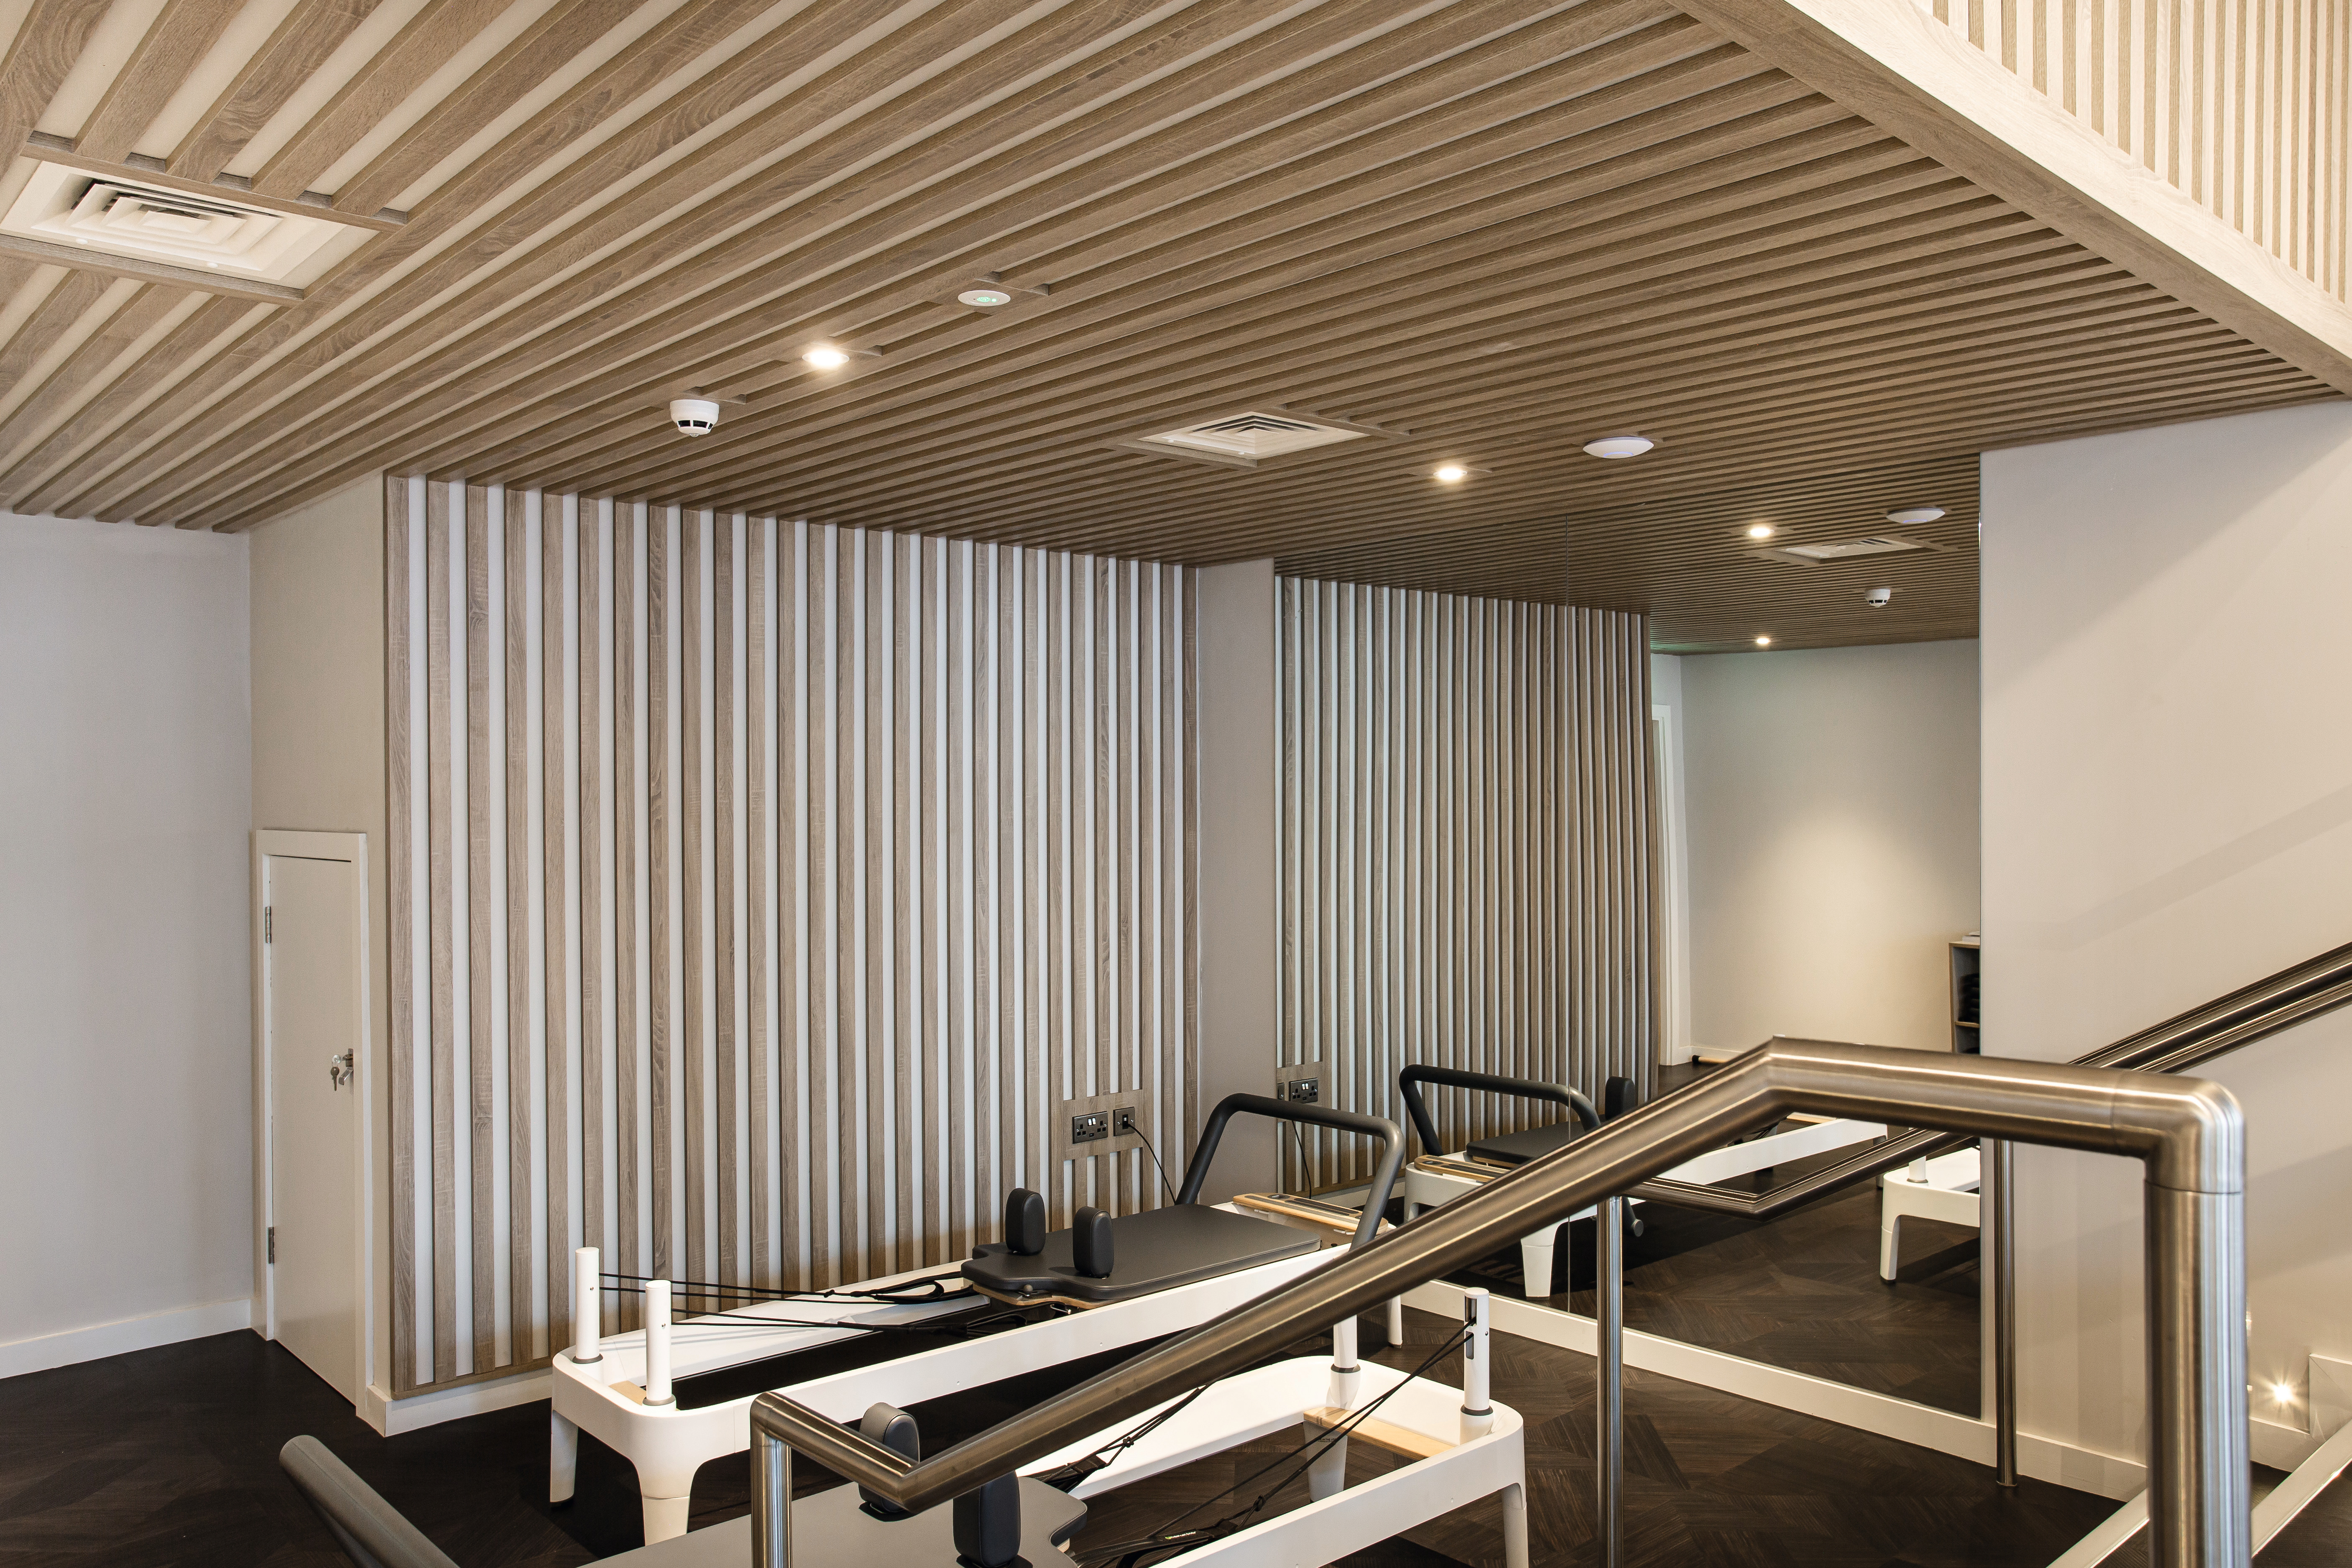 El nuevo estudio de bienestar fue realizado con paneles decorativos, laminados y cantos combinados en el mismo diseño en los tres pisos.